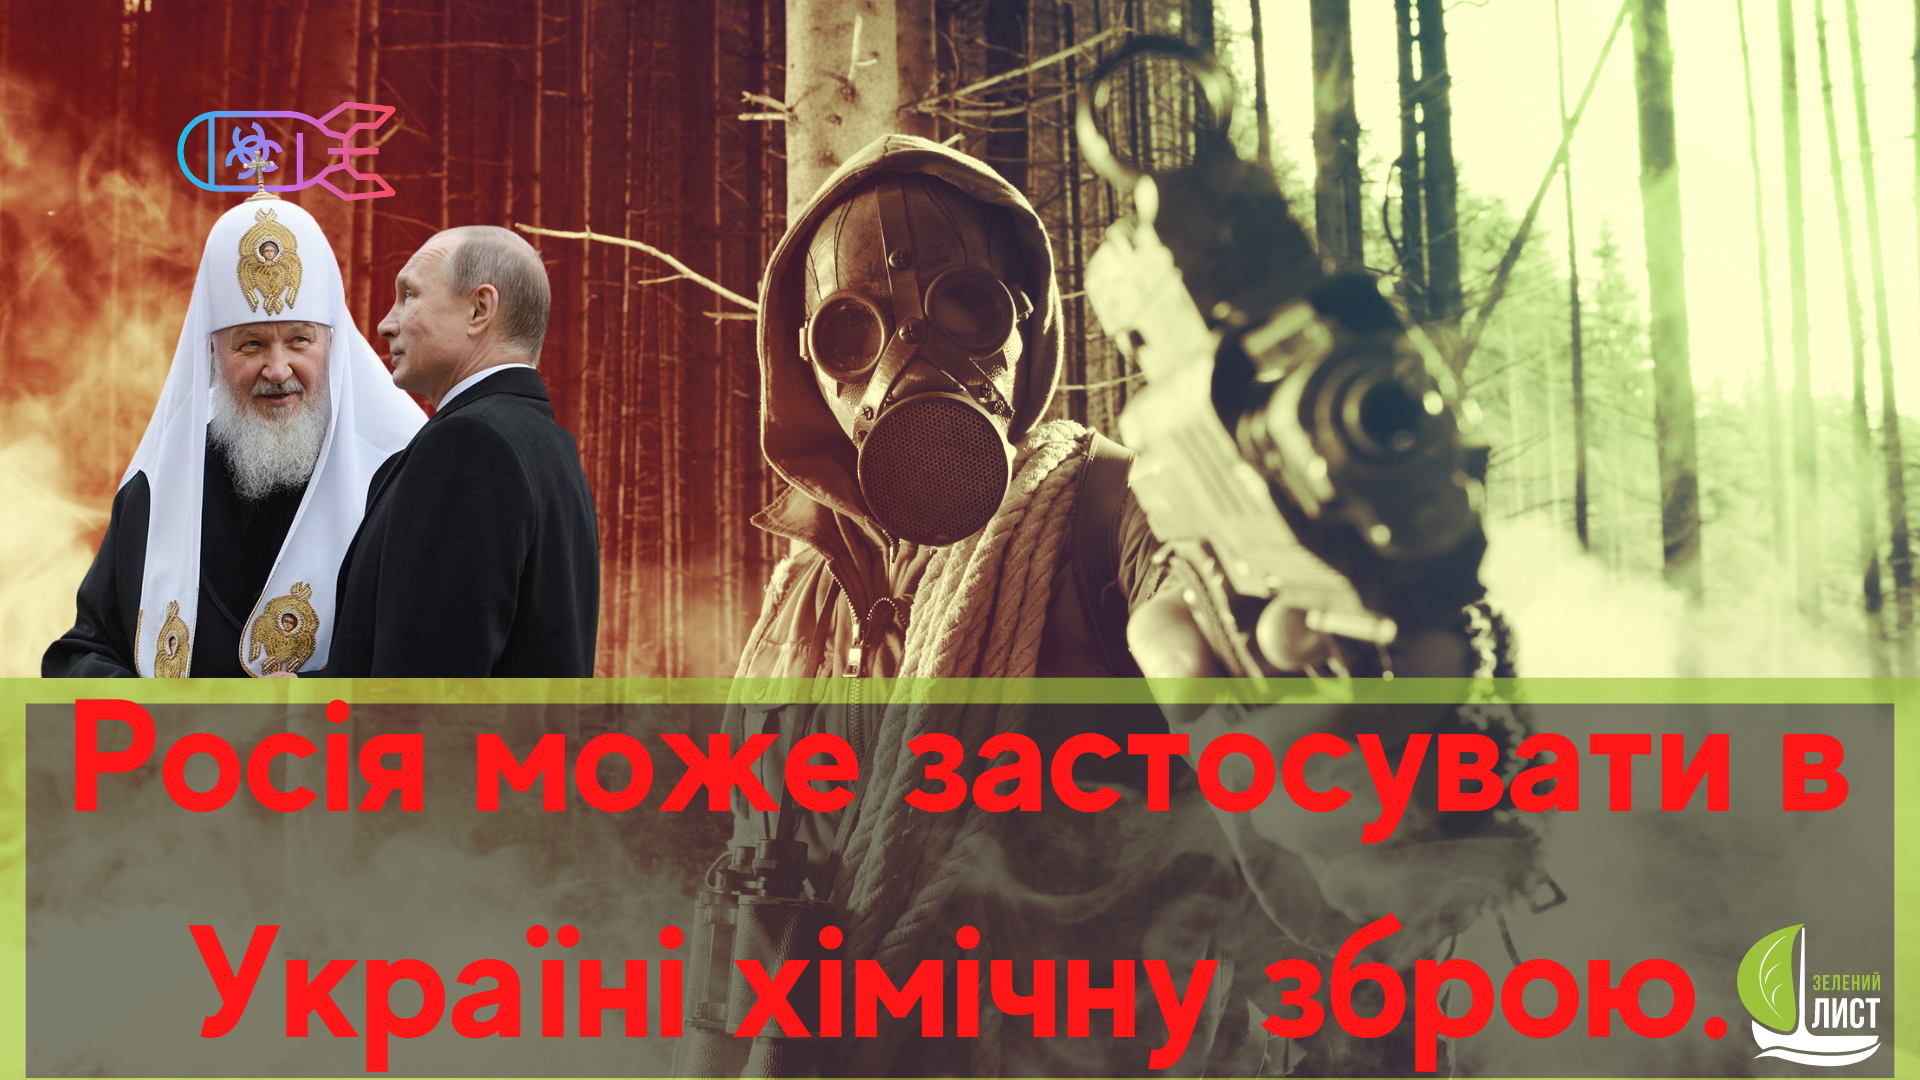 Росія може застосувати в Україні хімічну зброю.